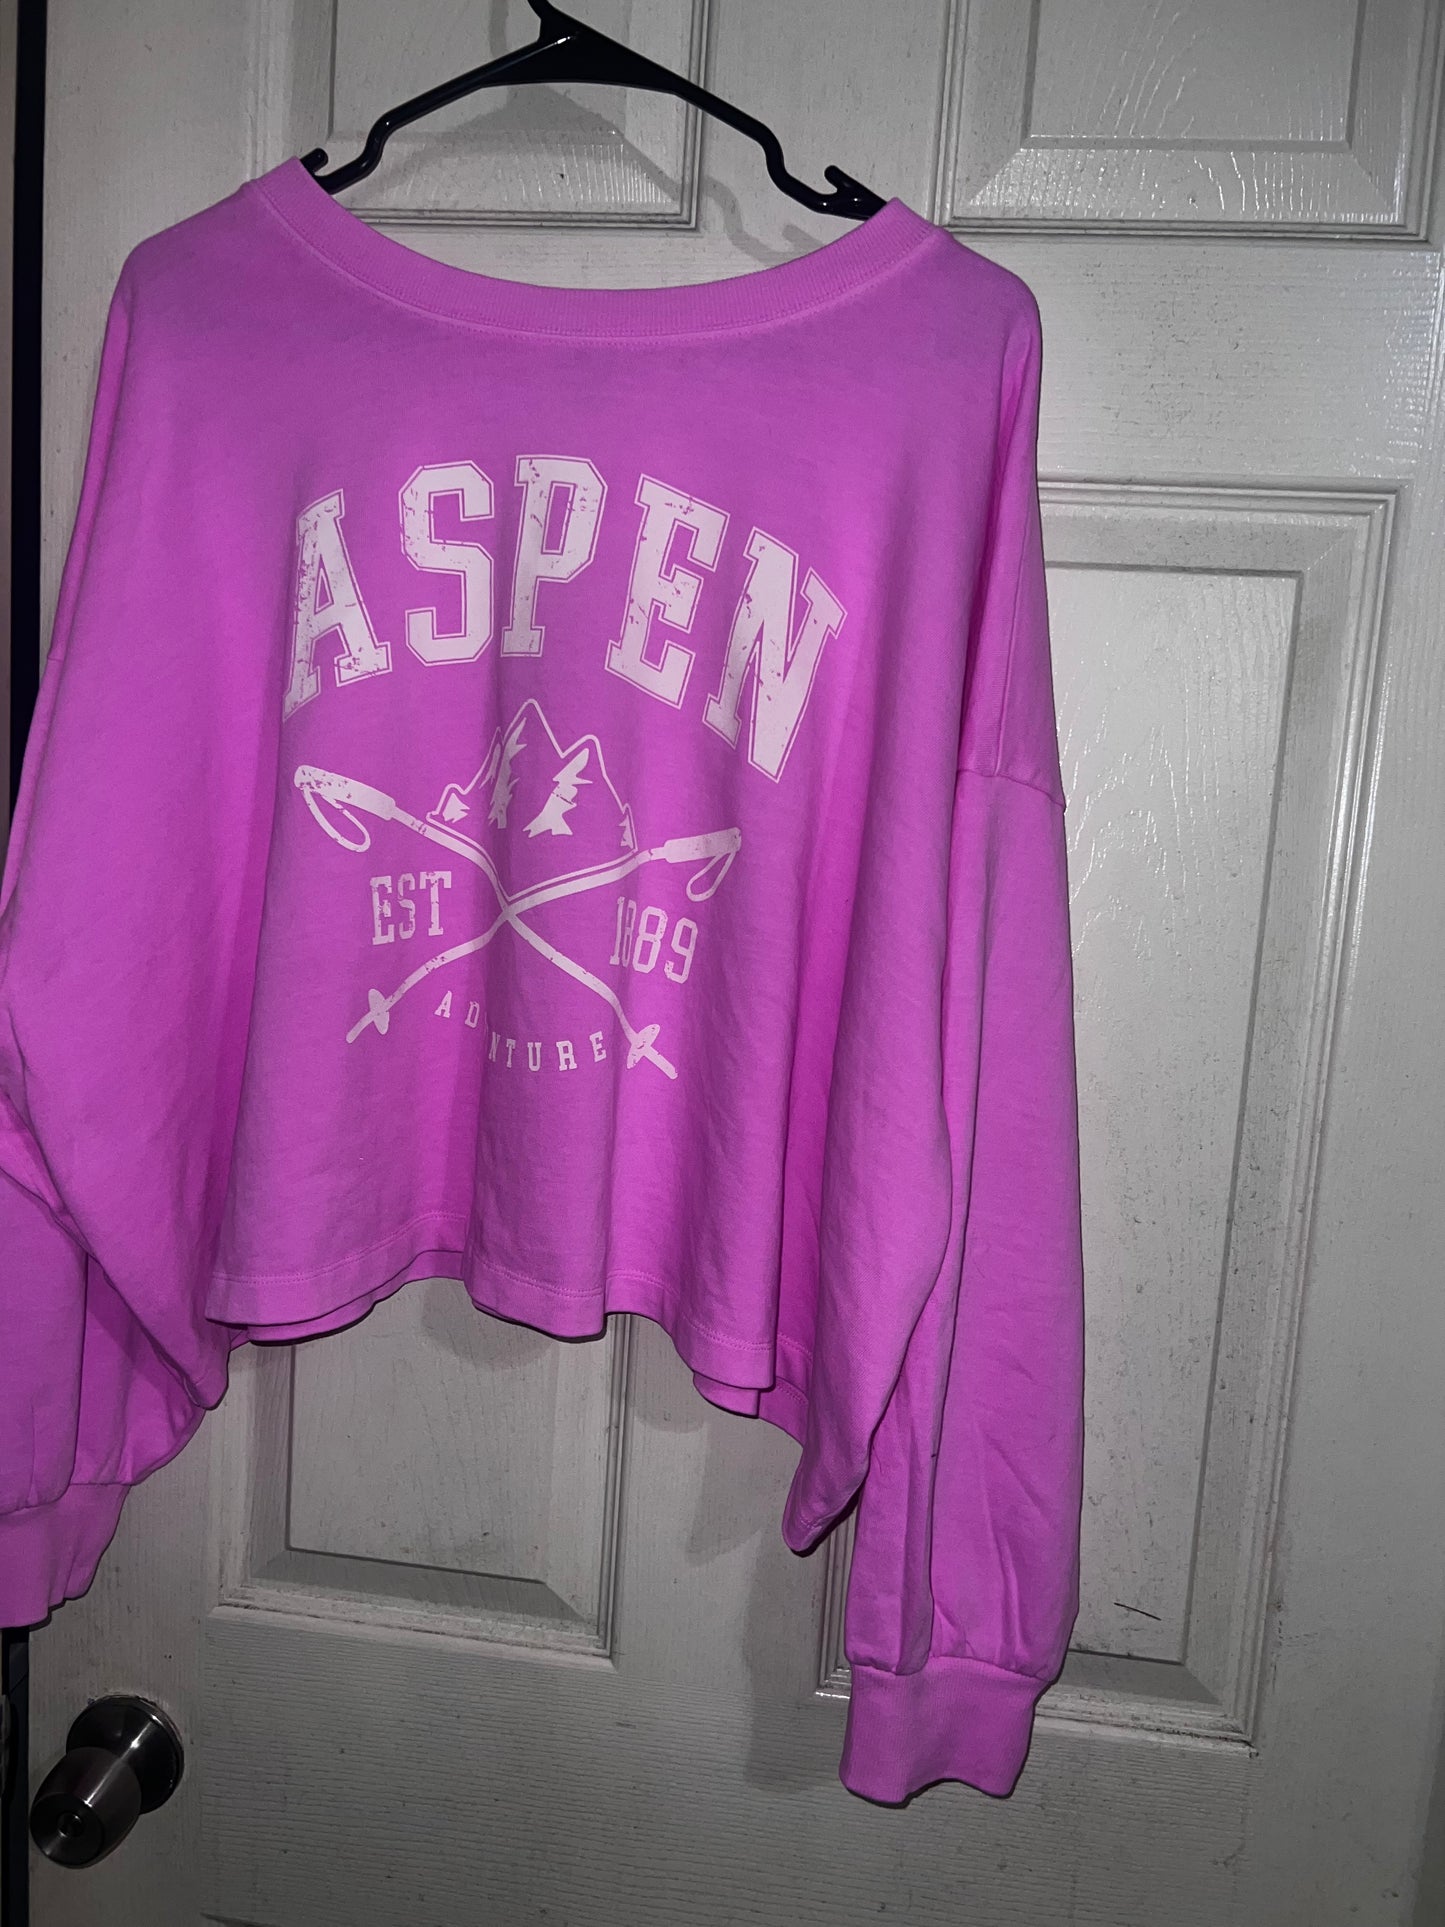 Aspen Oversized Long Sleeve Shirt